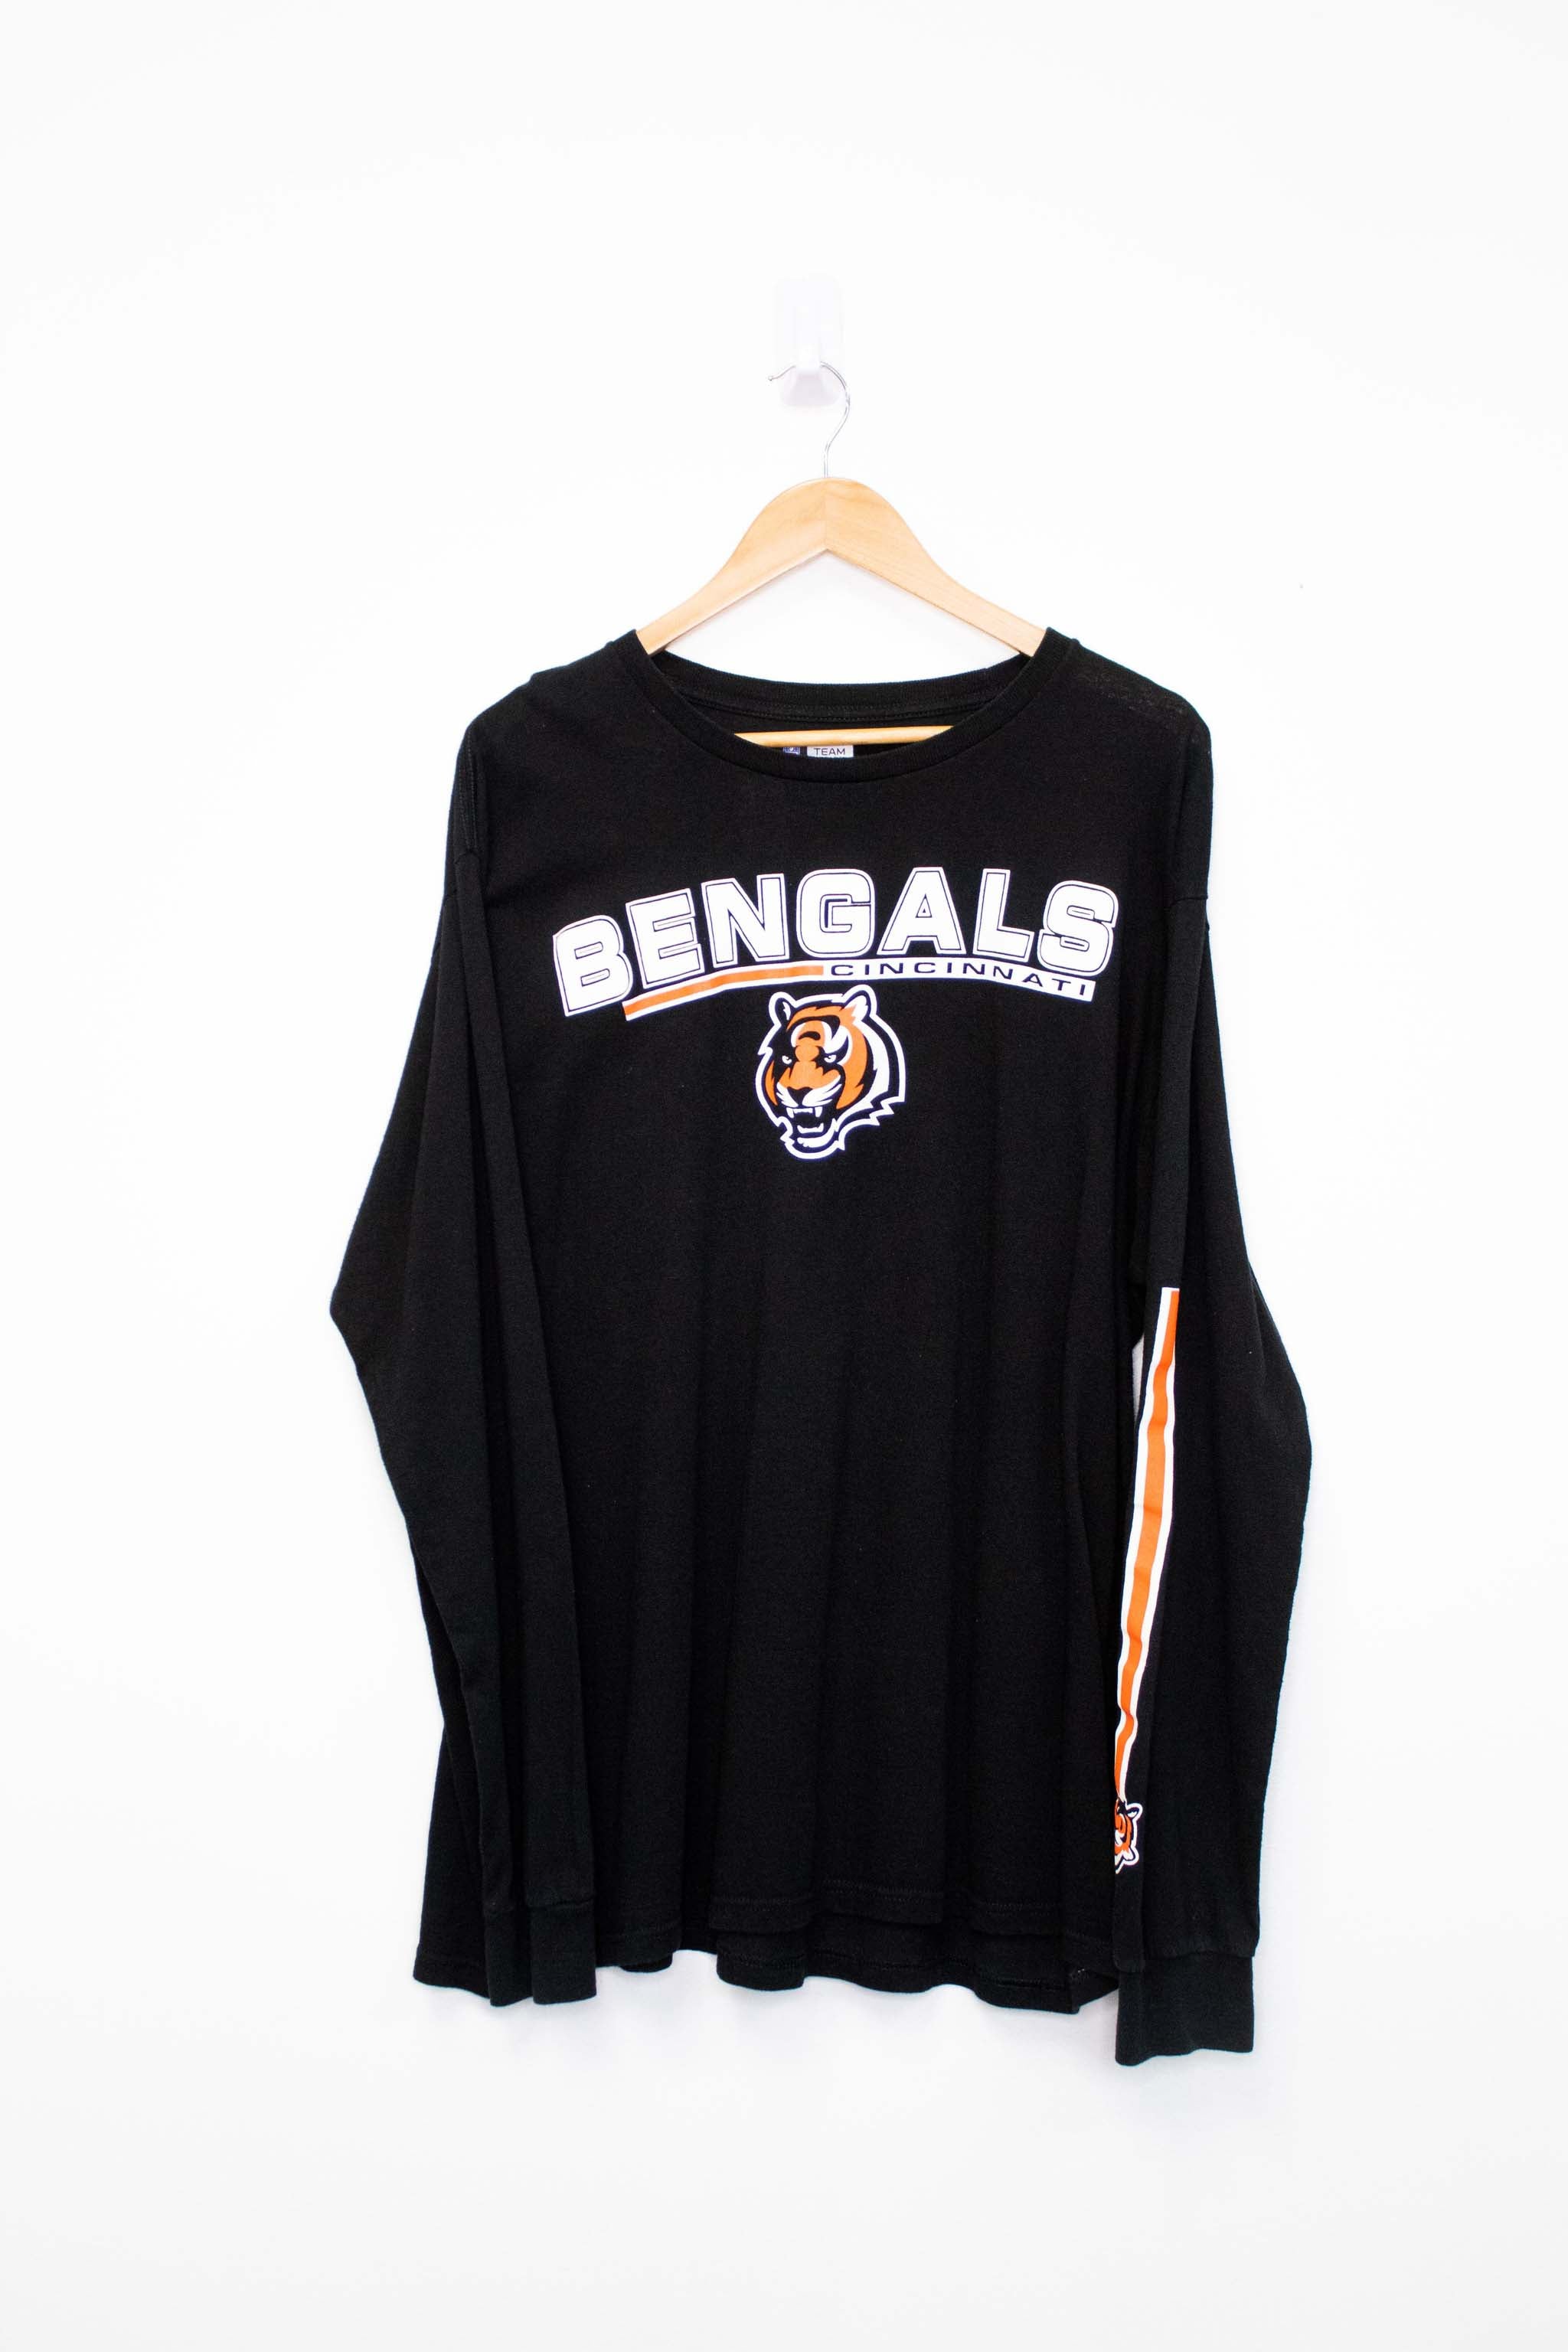 Vintage Cincinnati Bengals Longsleeve